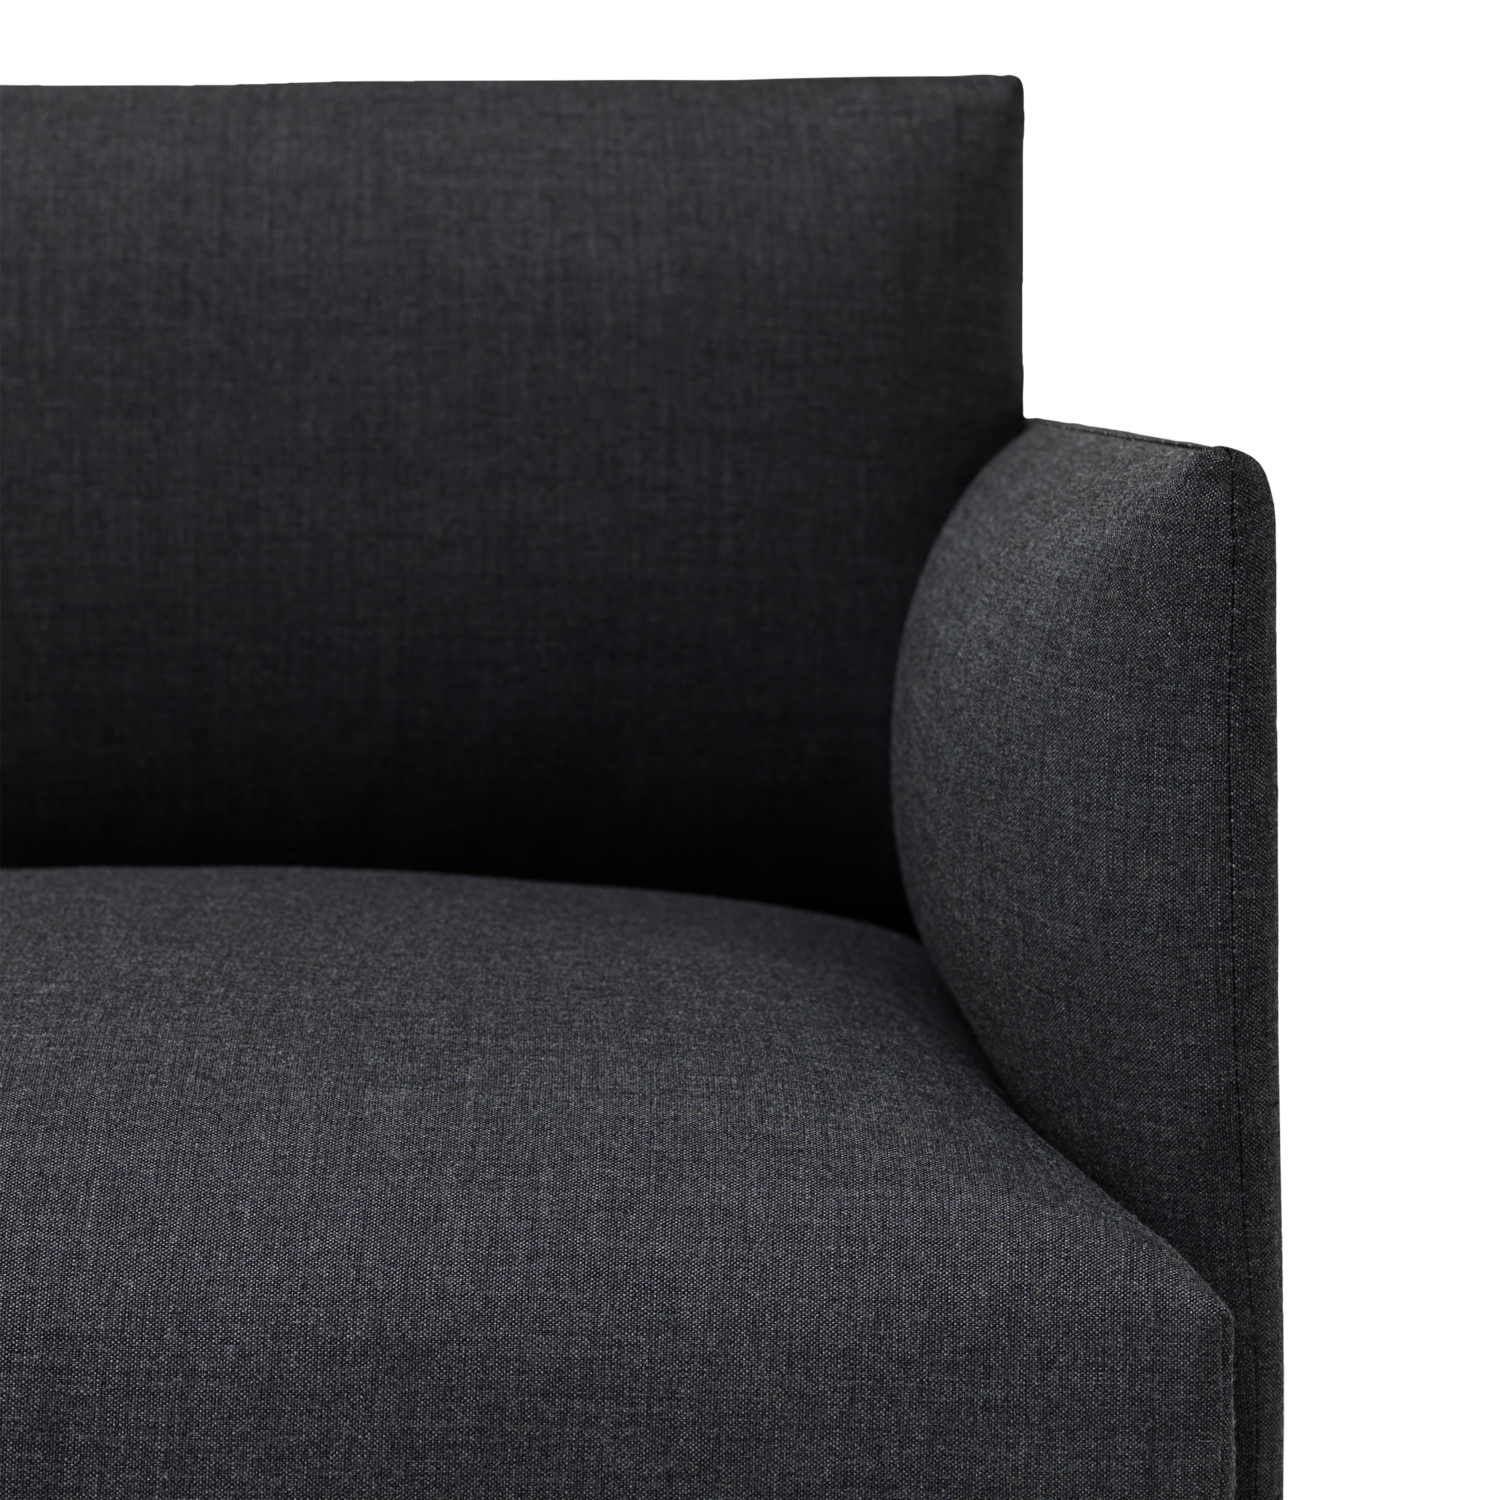 Outline Stuhl in Dunkelgrau / Schwarz präsentiert im Onlineshop von KAQTU Design AG. Sessel ist von Muuto